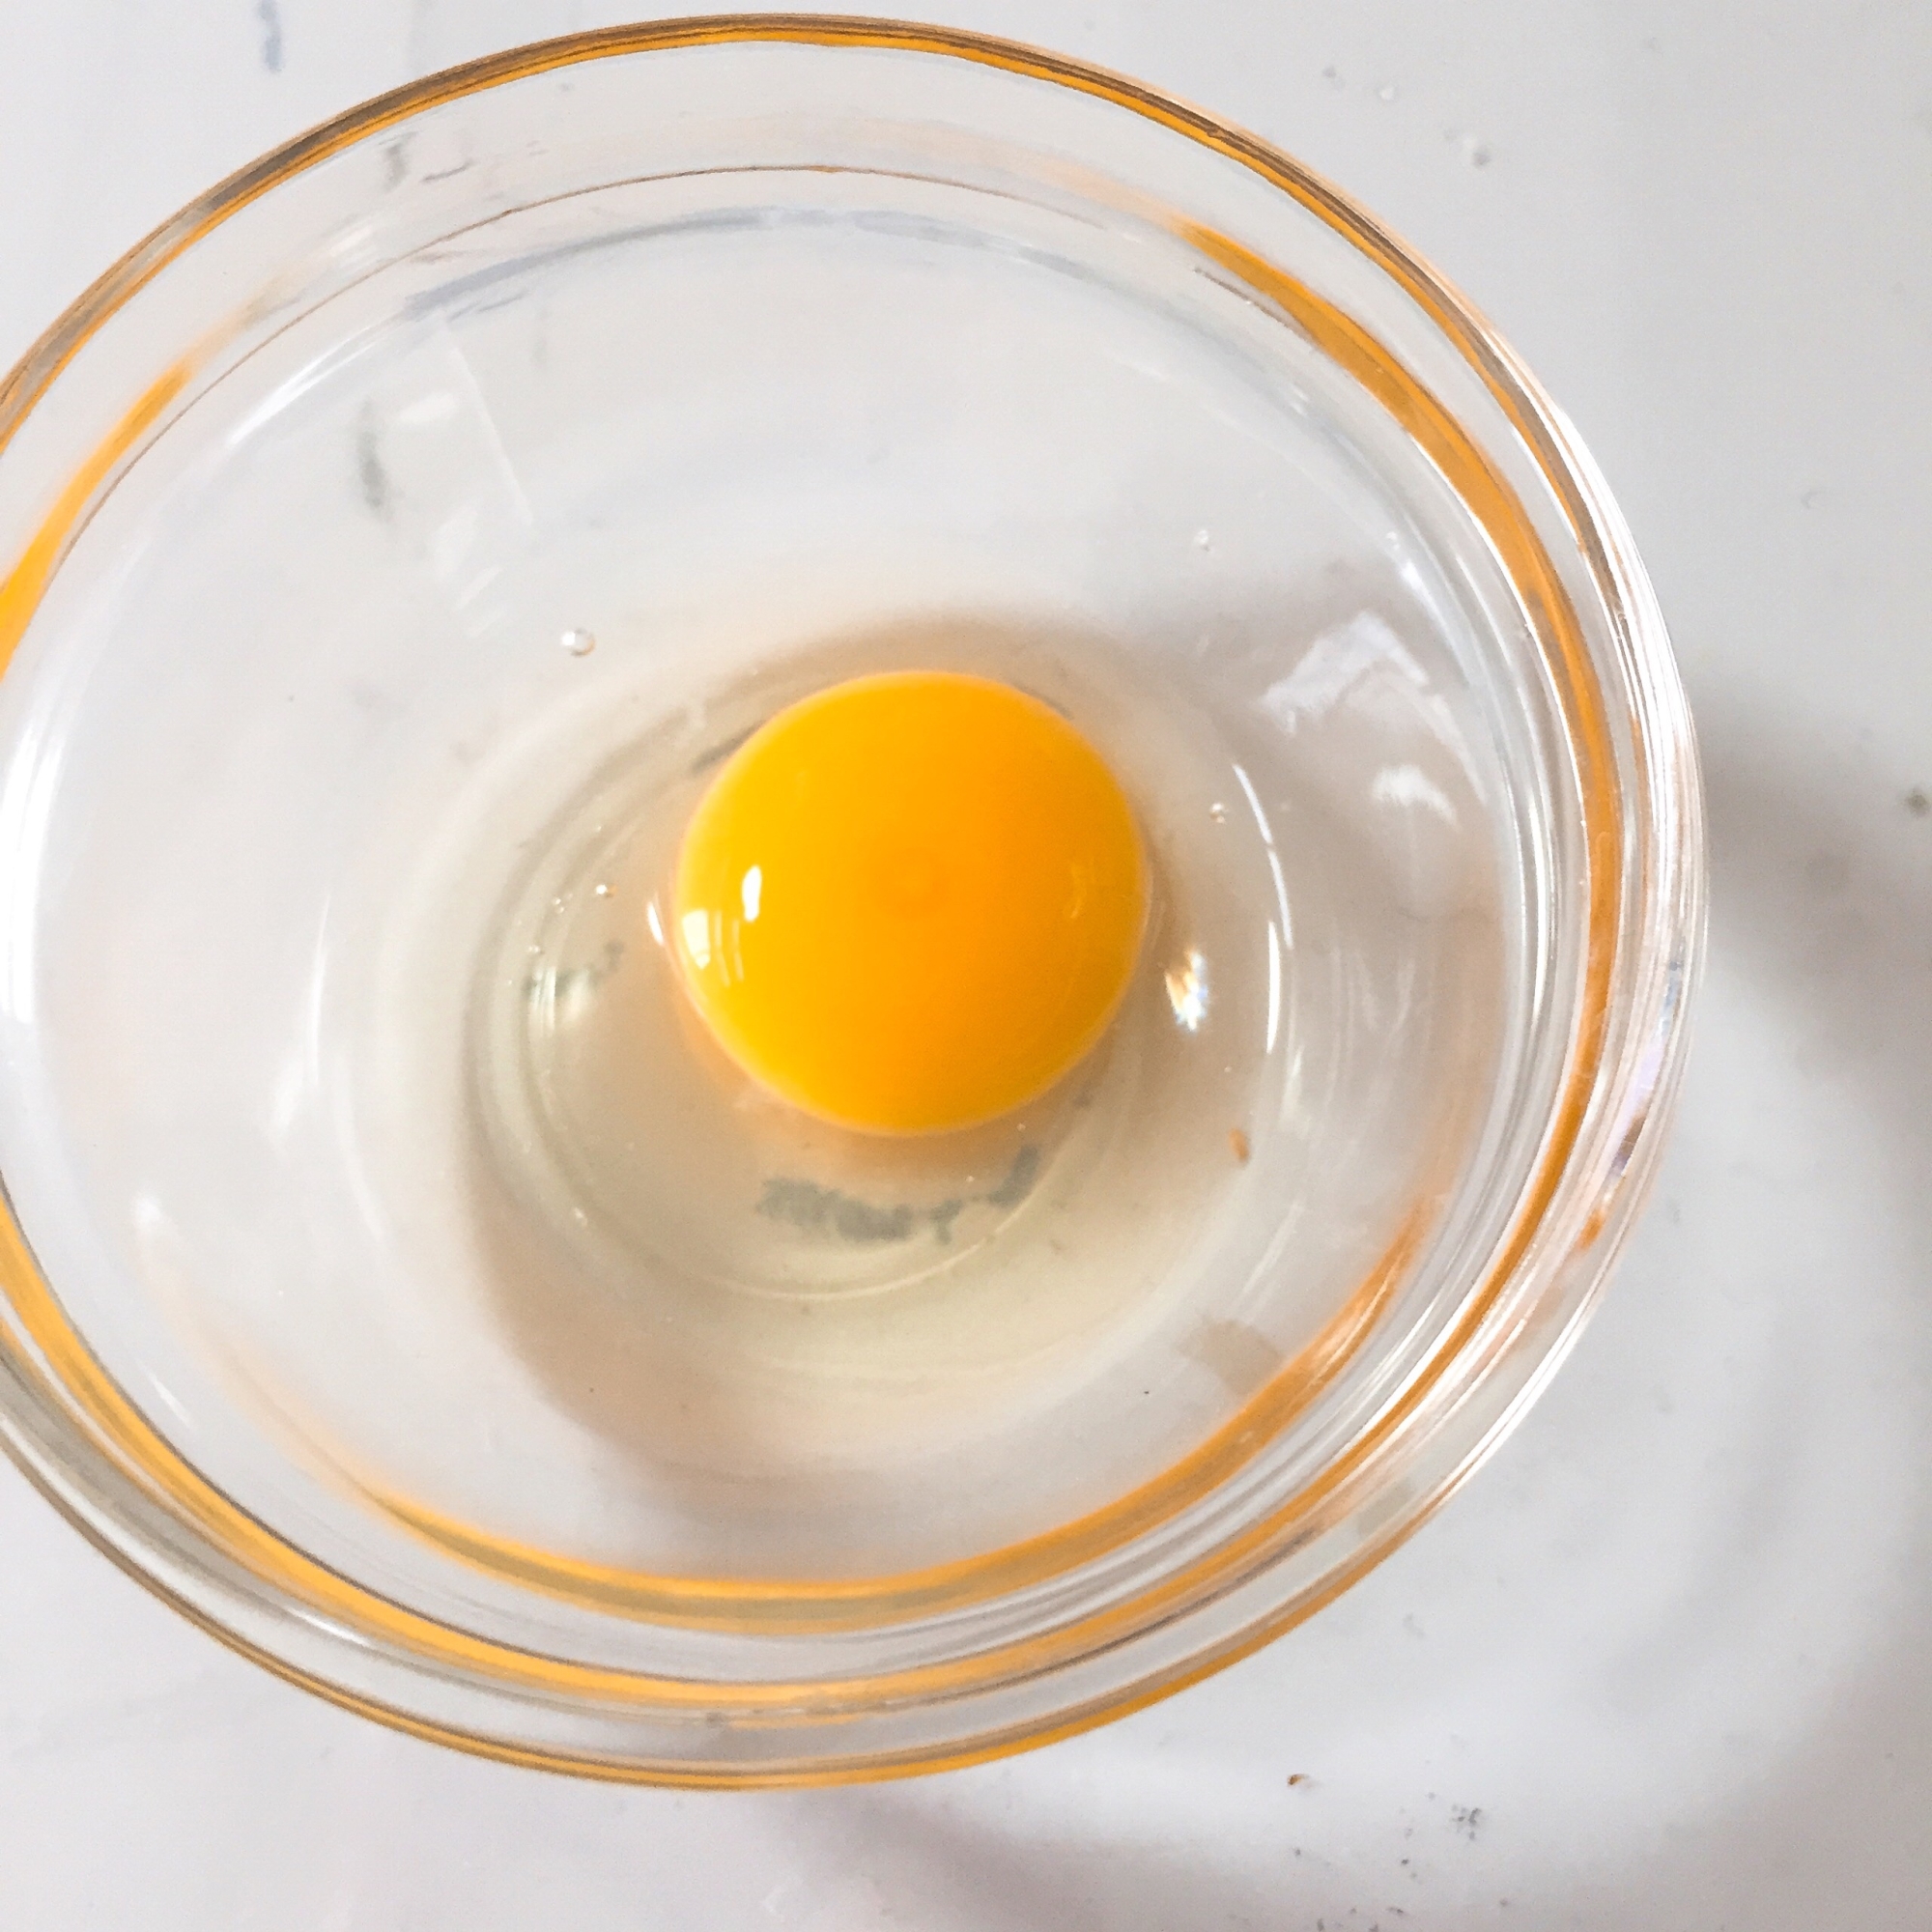 うずら卵の割り方